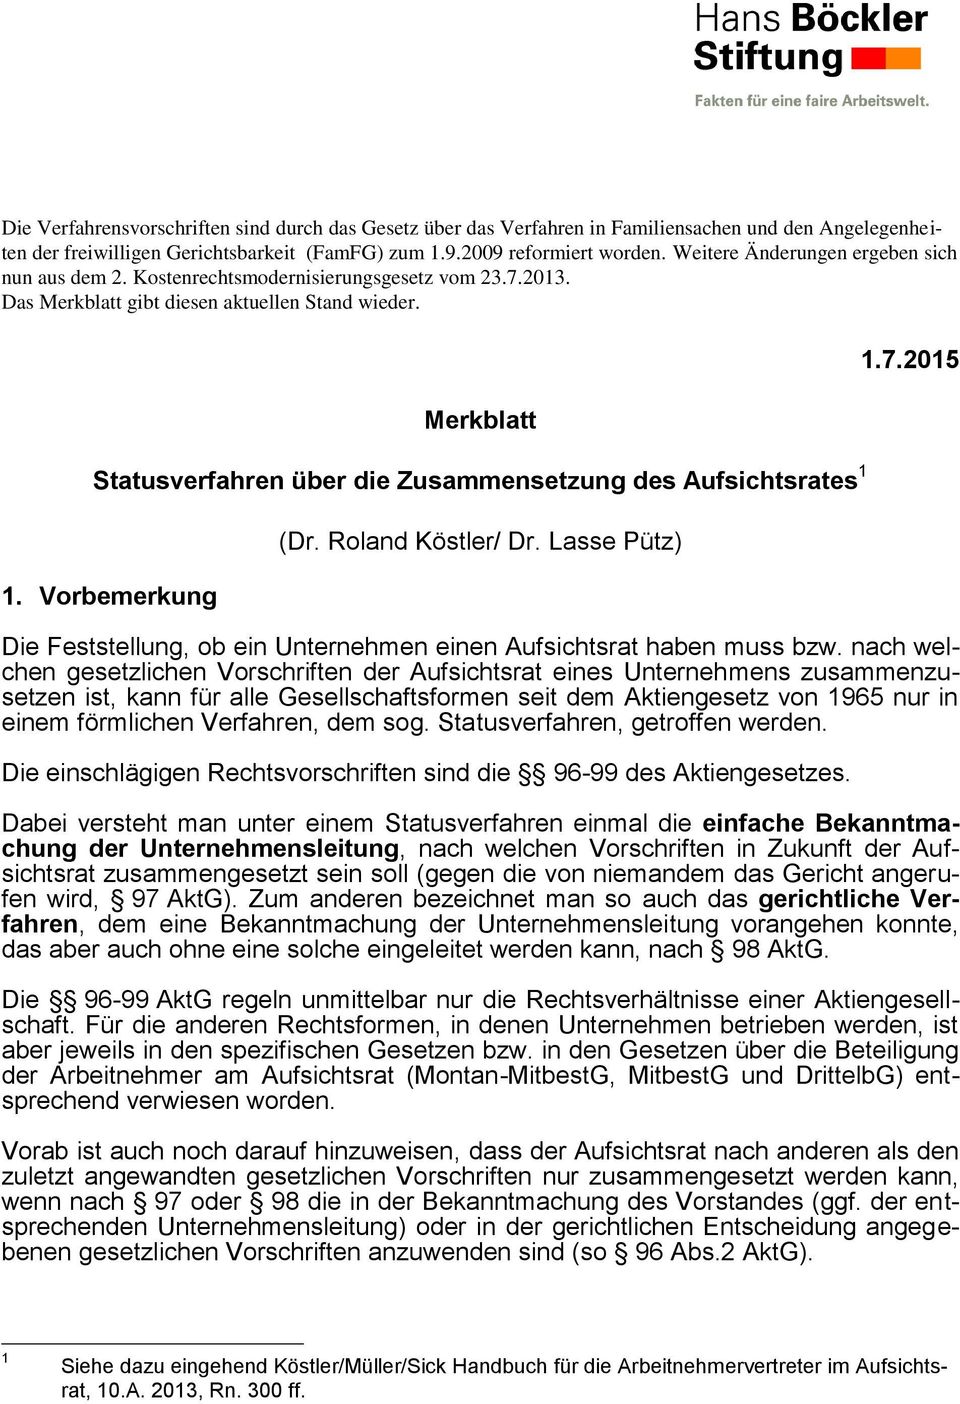 Merkblatt Statusverfahren über die Zusammensetzung des Aufsichtsrates 1 1. Vorbemerkung (Dr. Roland Köstler/ Dr. Lasse Pütz) 1.7.